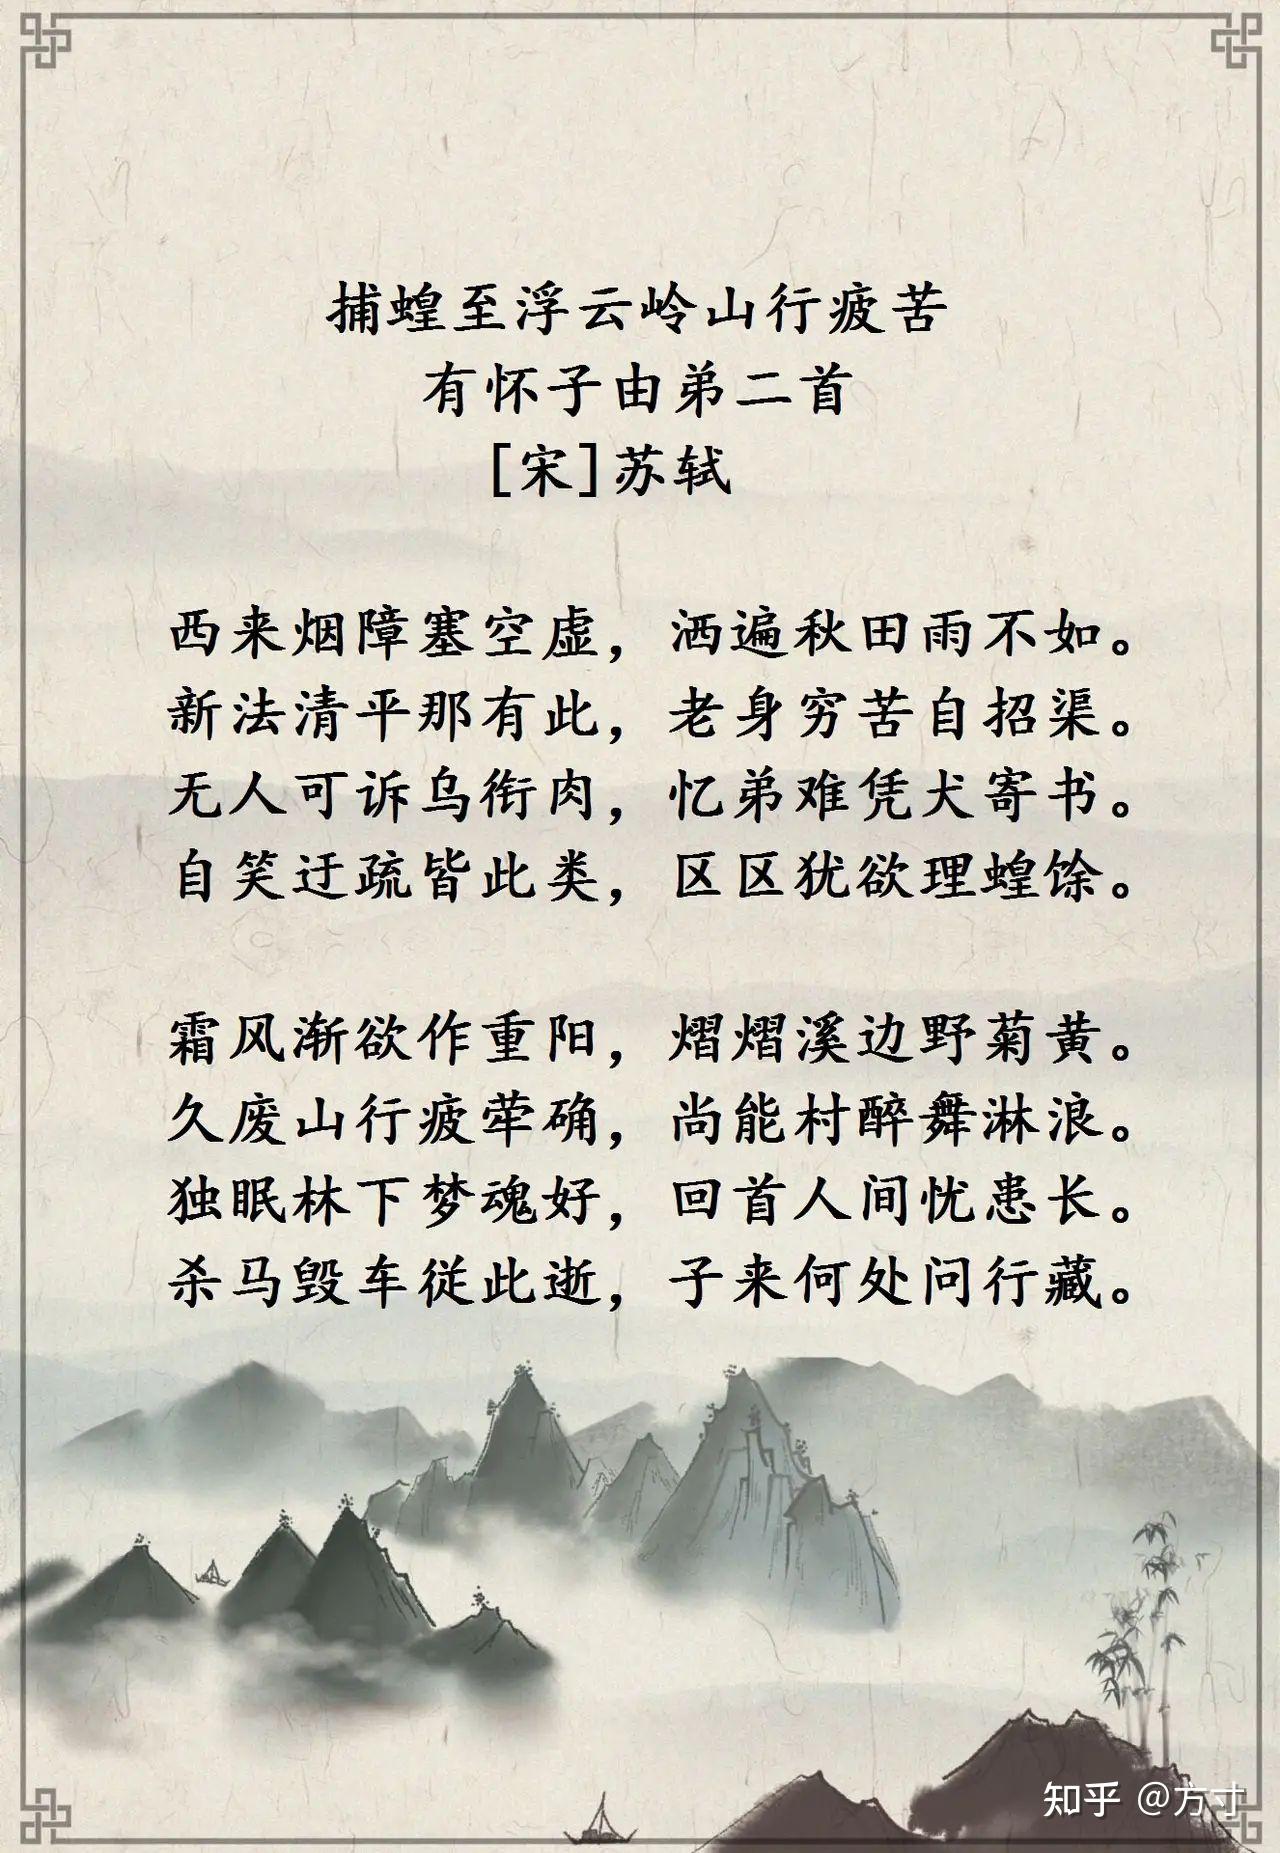 苏东坡写给弟弟苏辙的诗词9首 苏轼对弟弟关爱备至;苏辙对兄长崇拜有